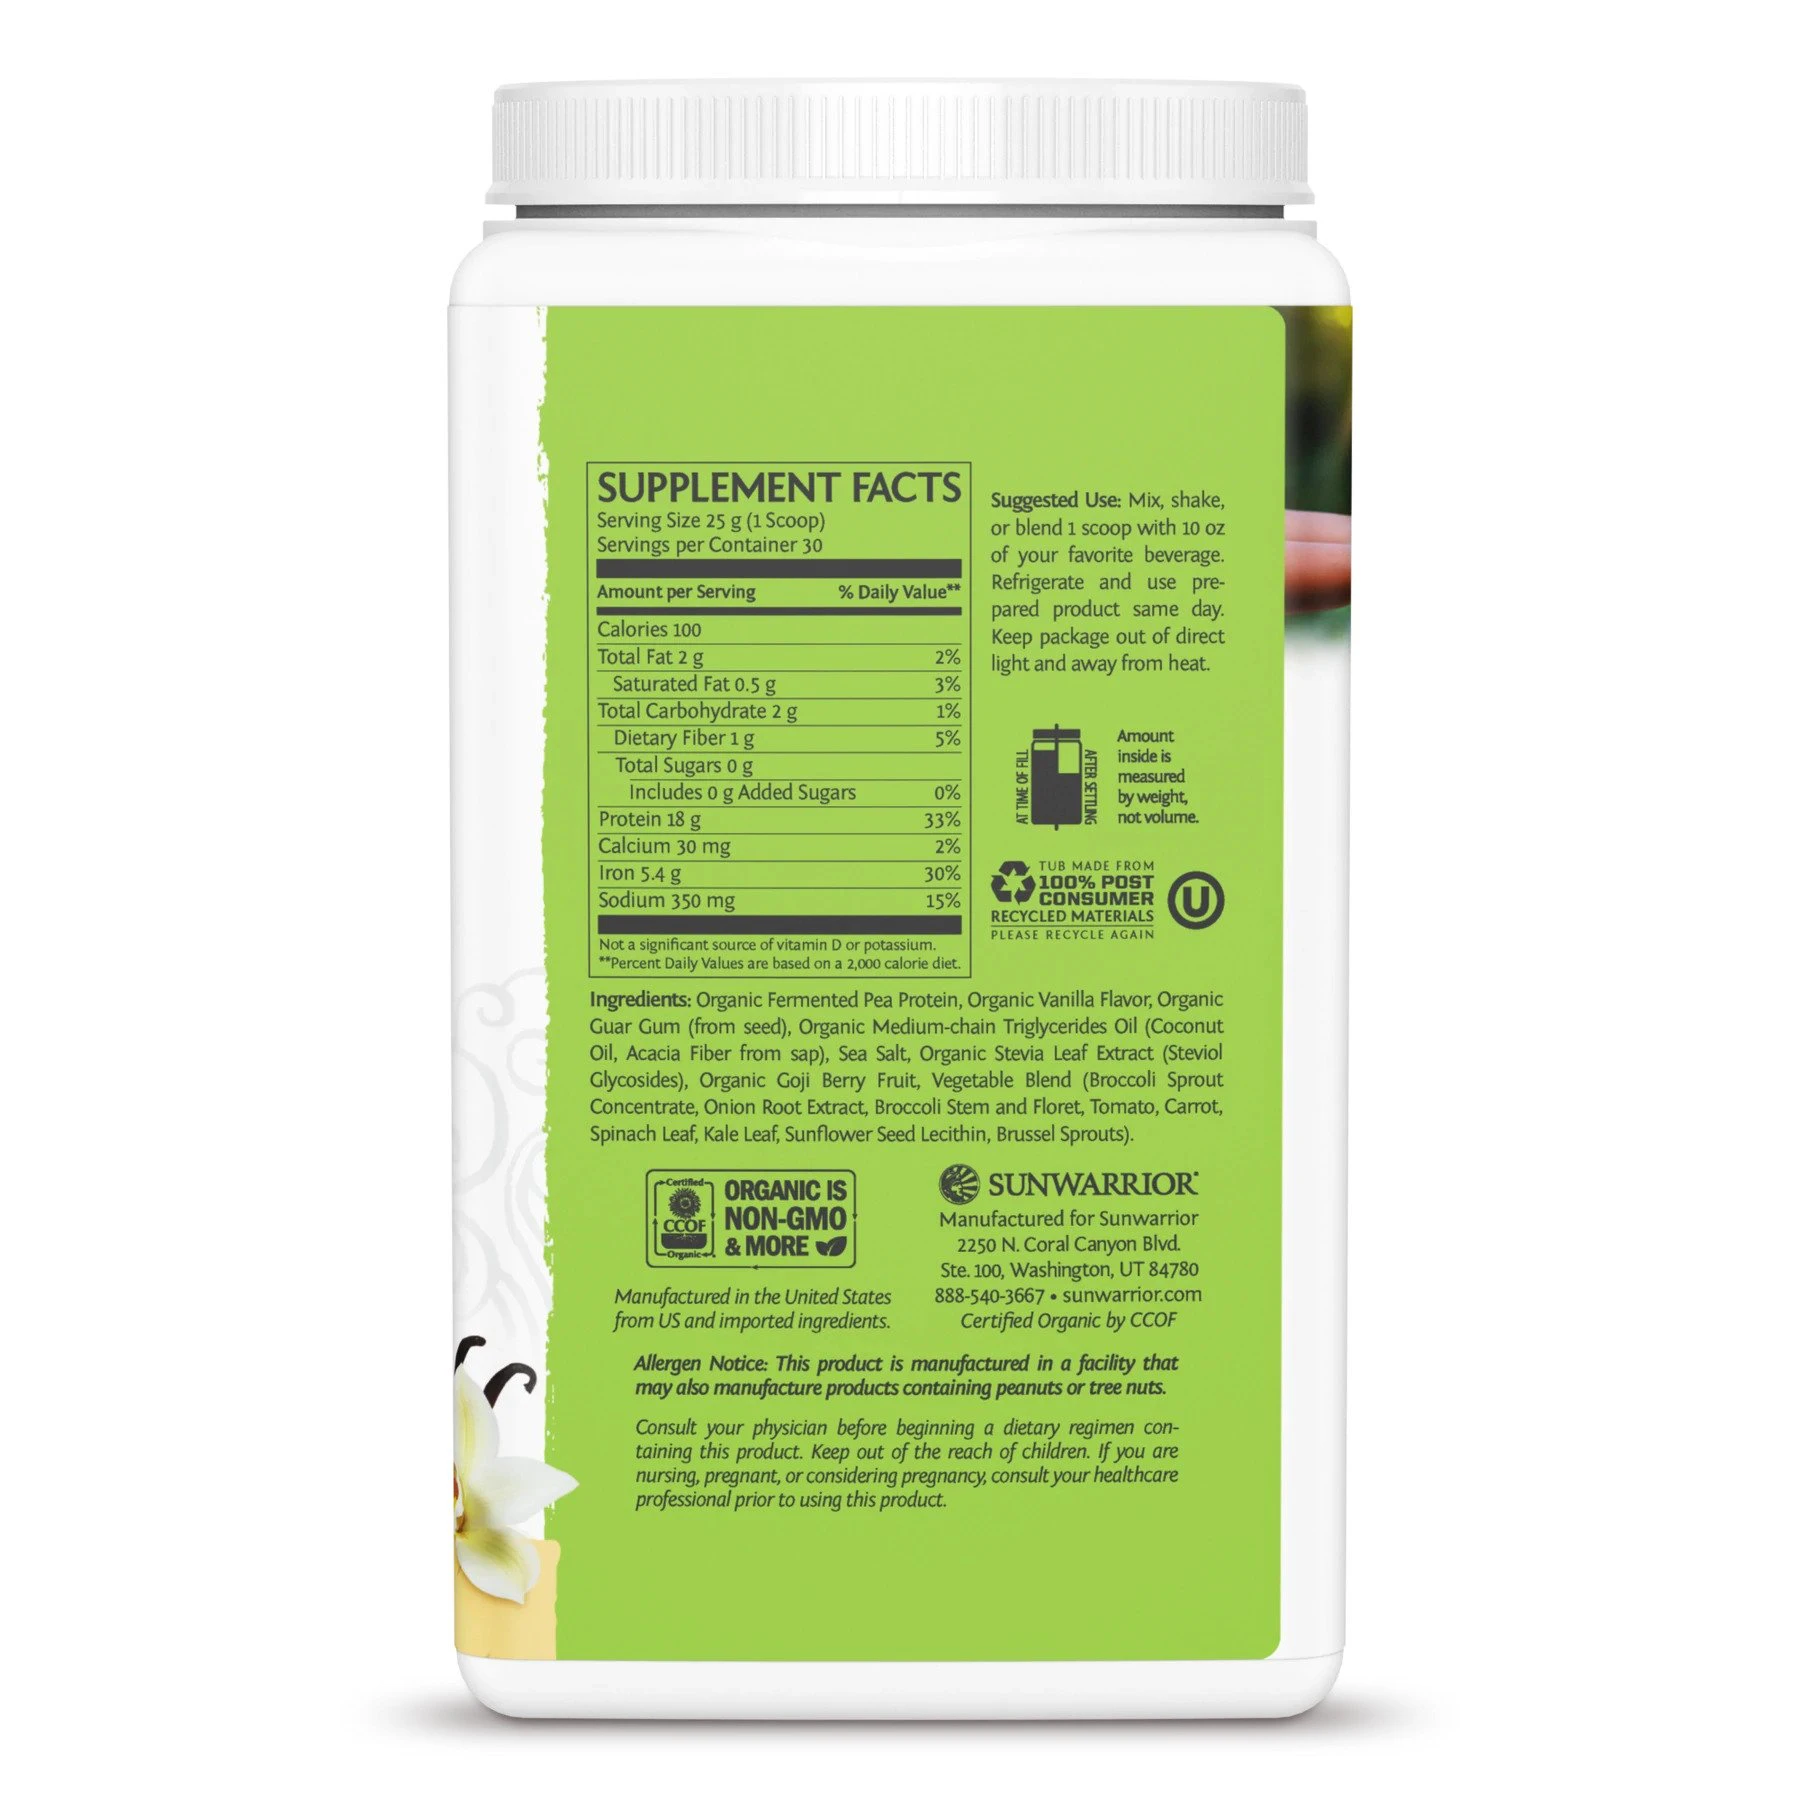 Cung cấp rau xanh & protein thực vật Sunwarrior Clean Greens & Protein 14